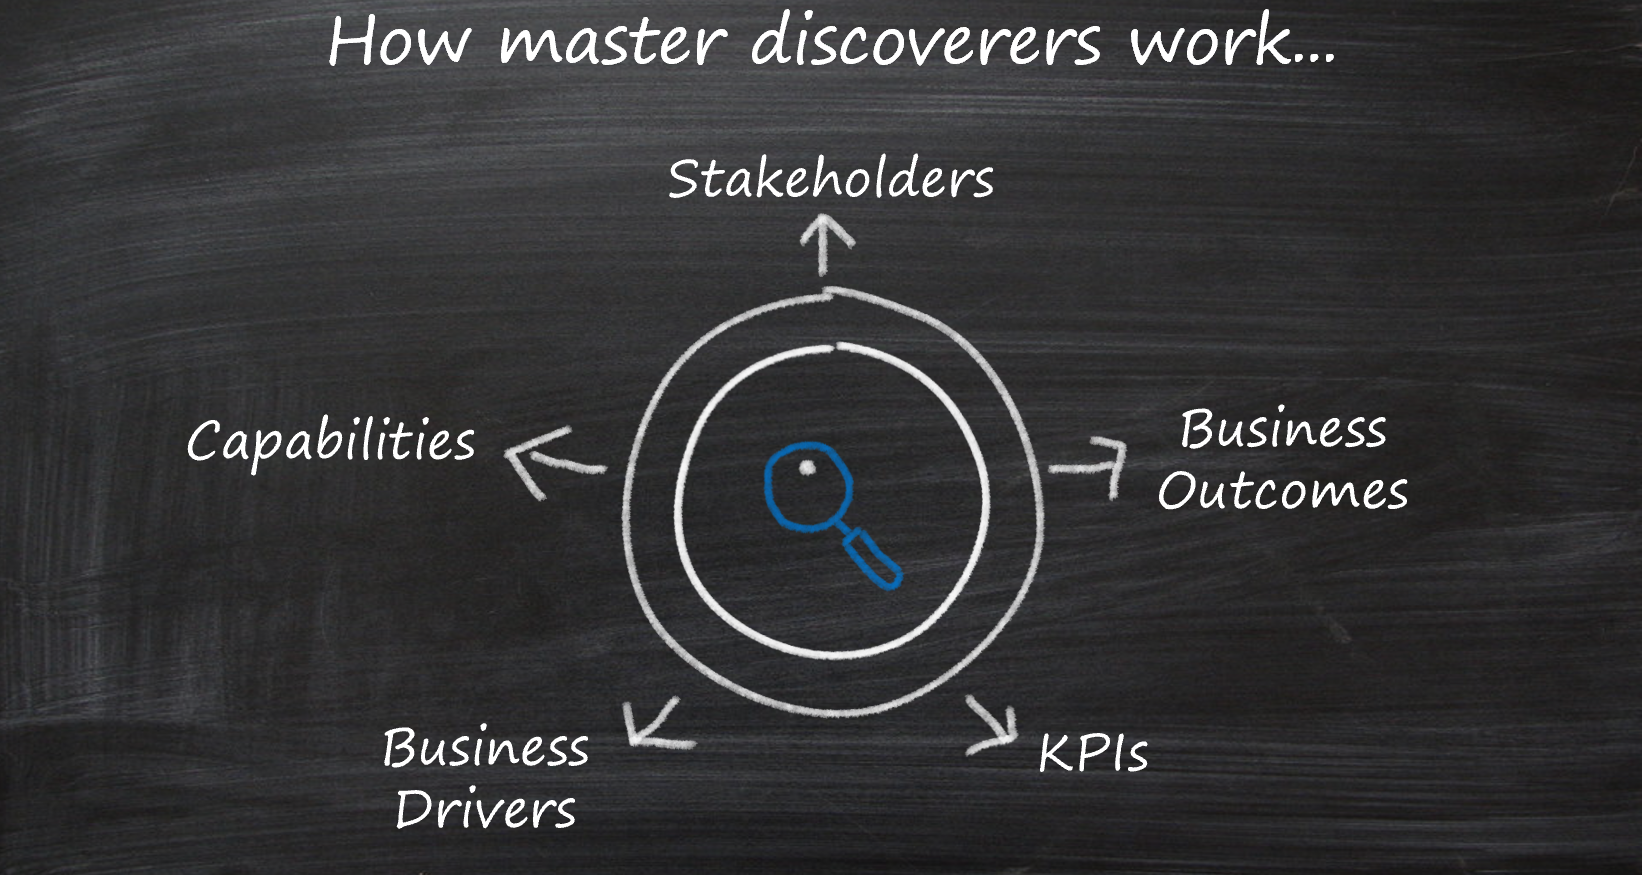 探索で重視する 5 つの領域: 利害関係者、成果、推進者、KPI、機能